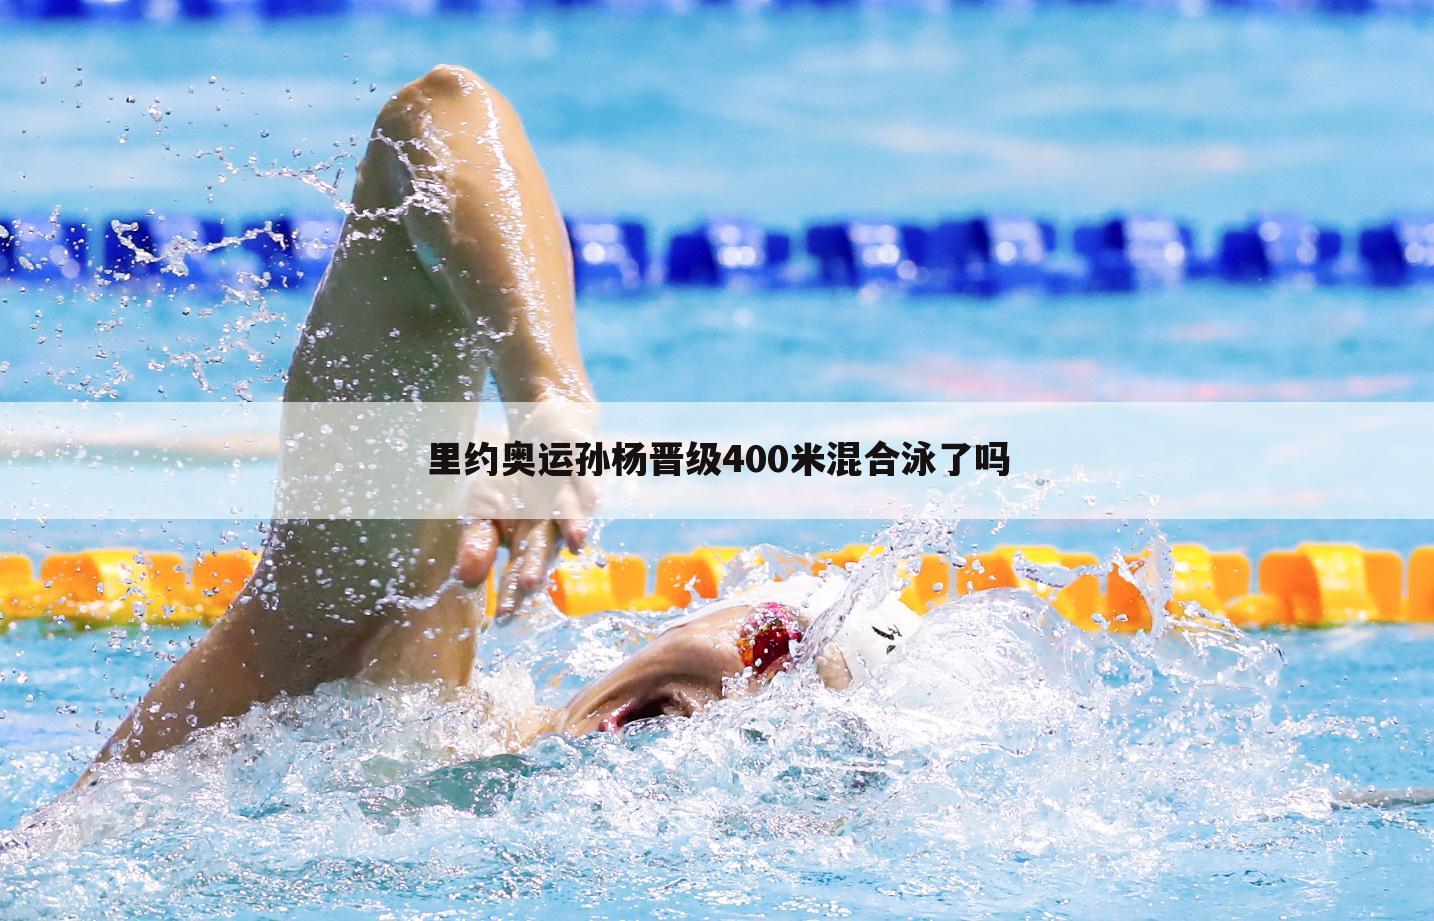 〖400米混合泳〗濑户大也400米混合泳